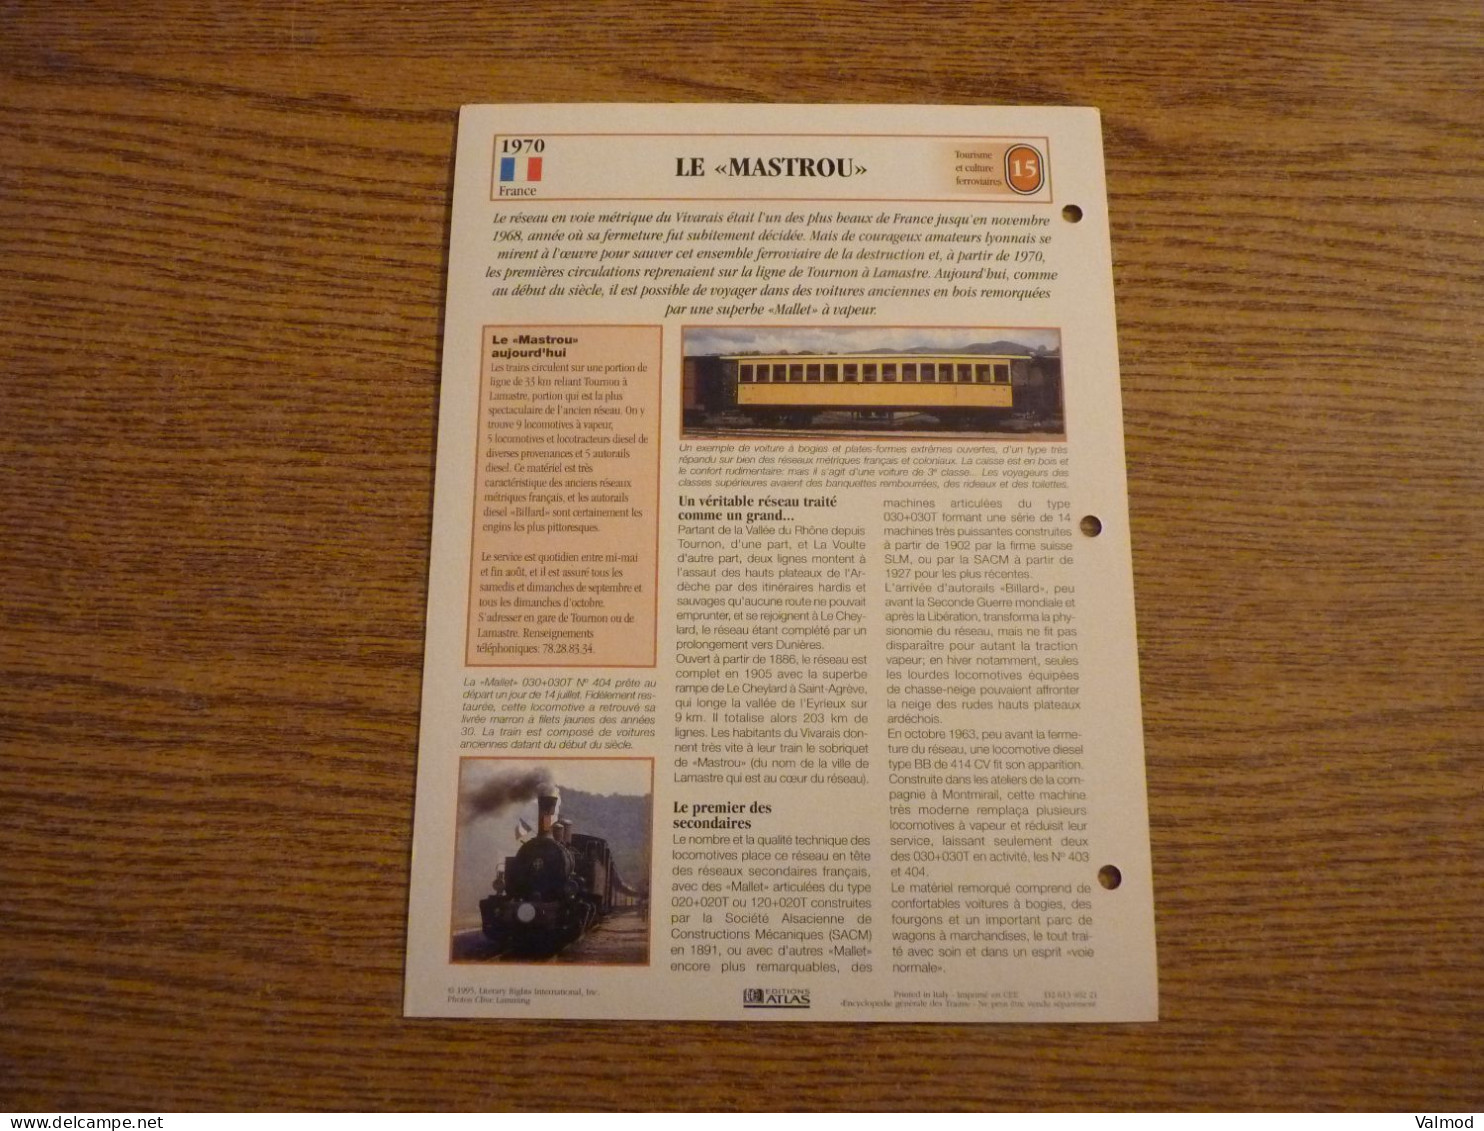 Lot de 59 Fiches "Encyclopédie Générale des Trains" - Edition Atlas -  Voir Détails sur Photos - 18,6x25 cm env.